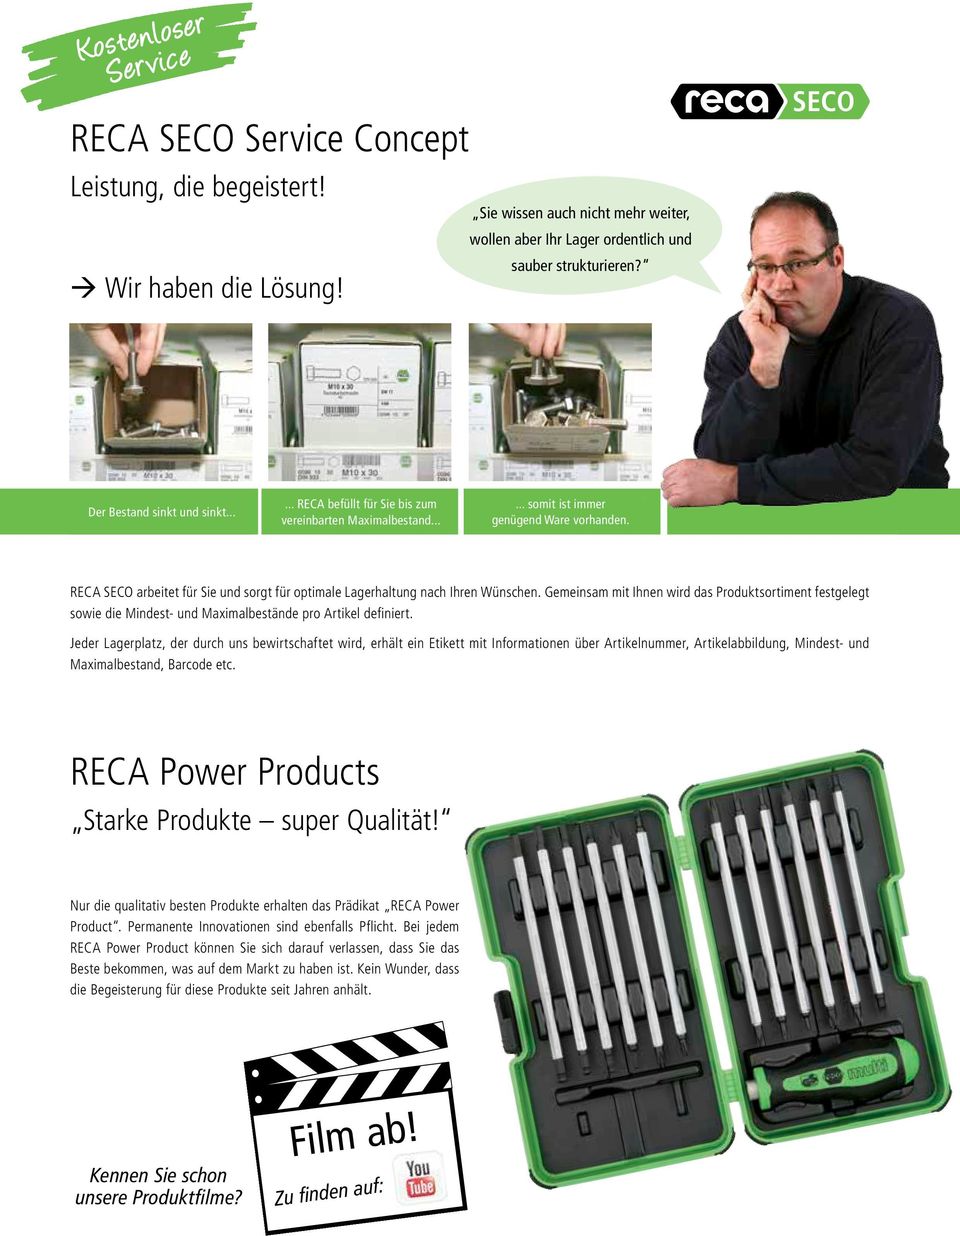 RECA SECO arbeitet für Sie und sorgt für optimale Lagerhaltung nach Ihren Wünschen.